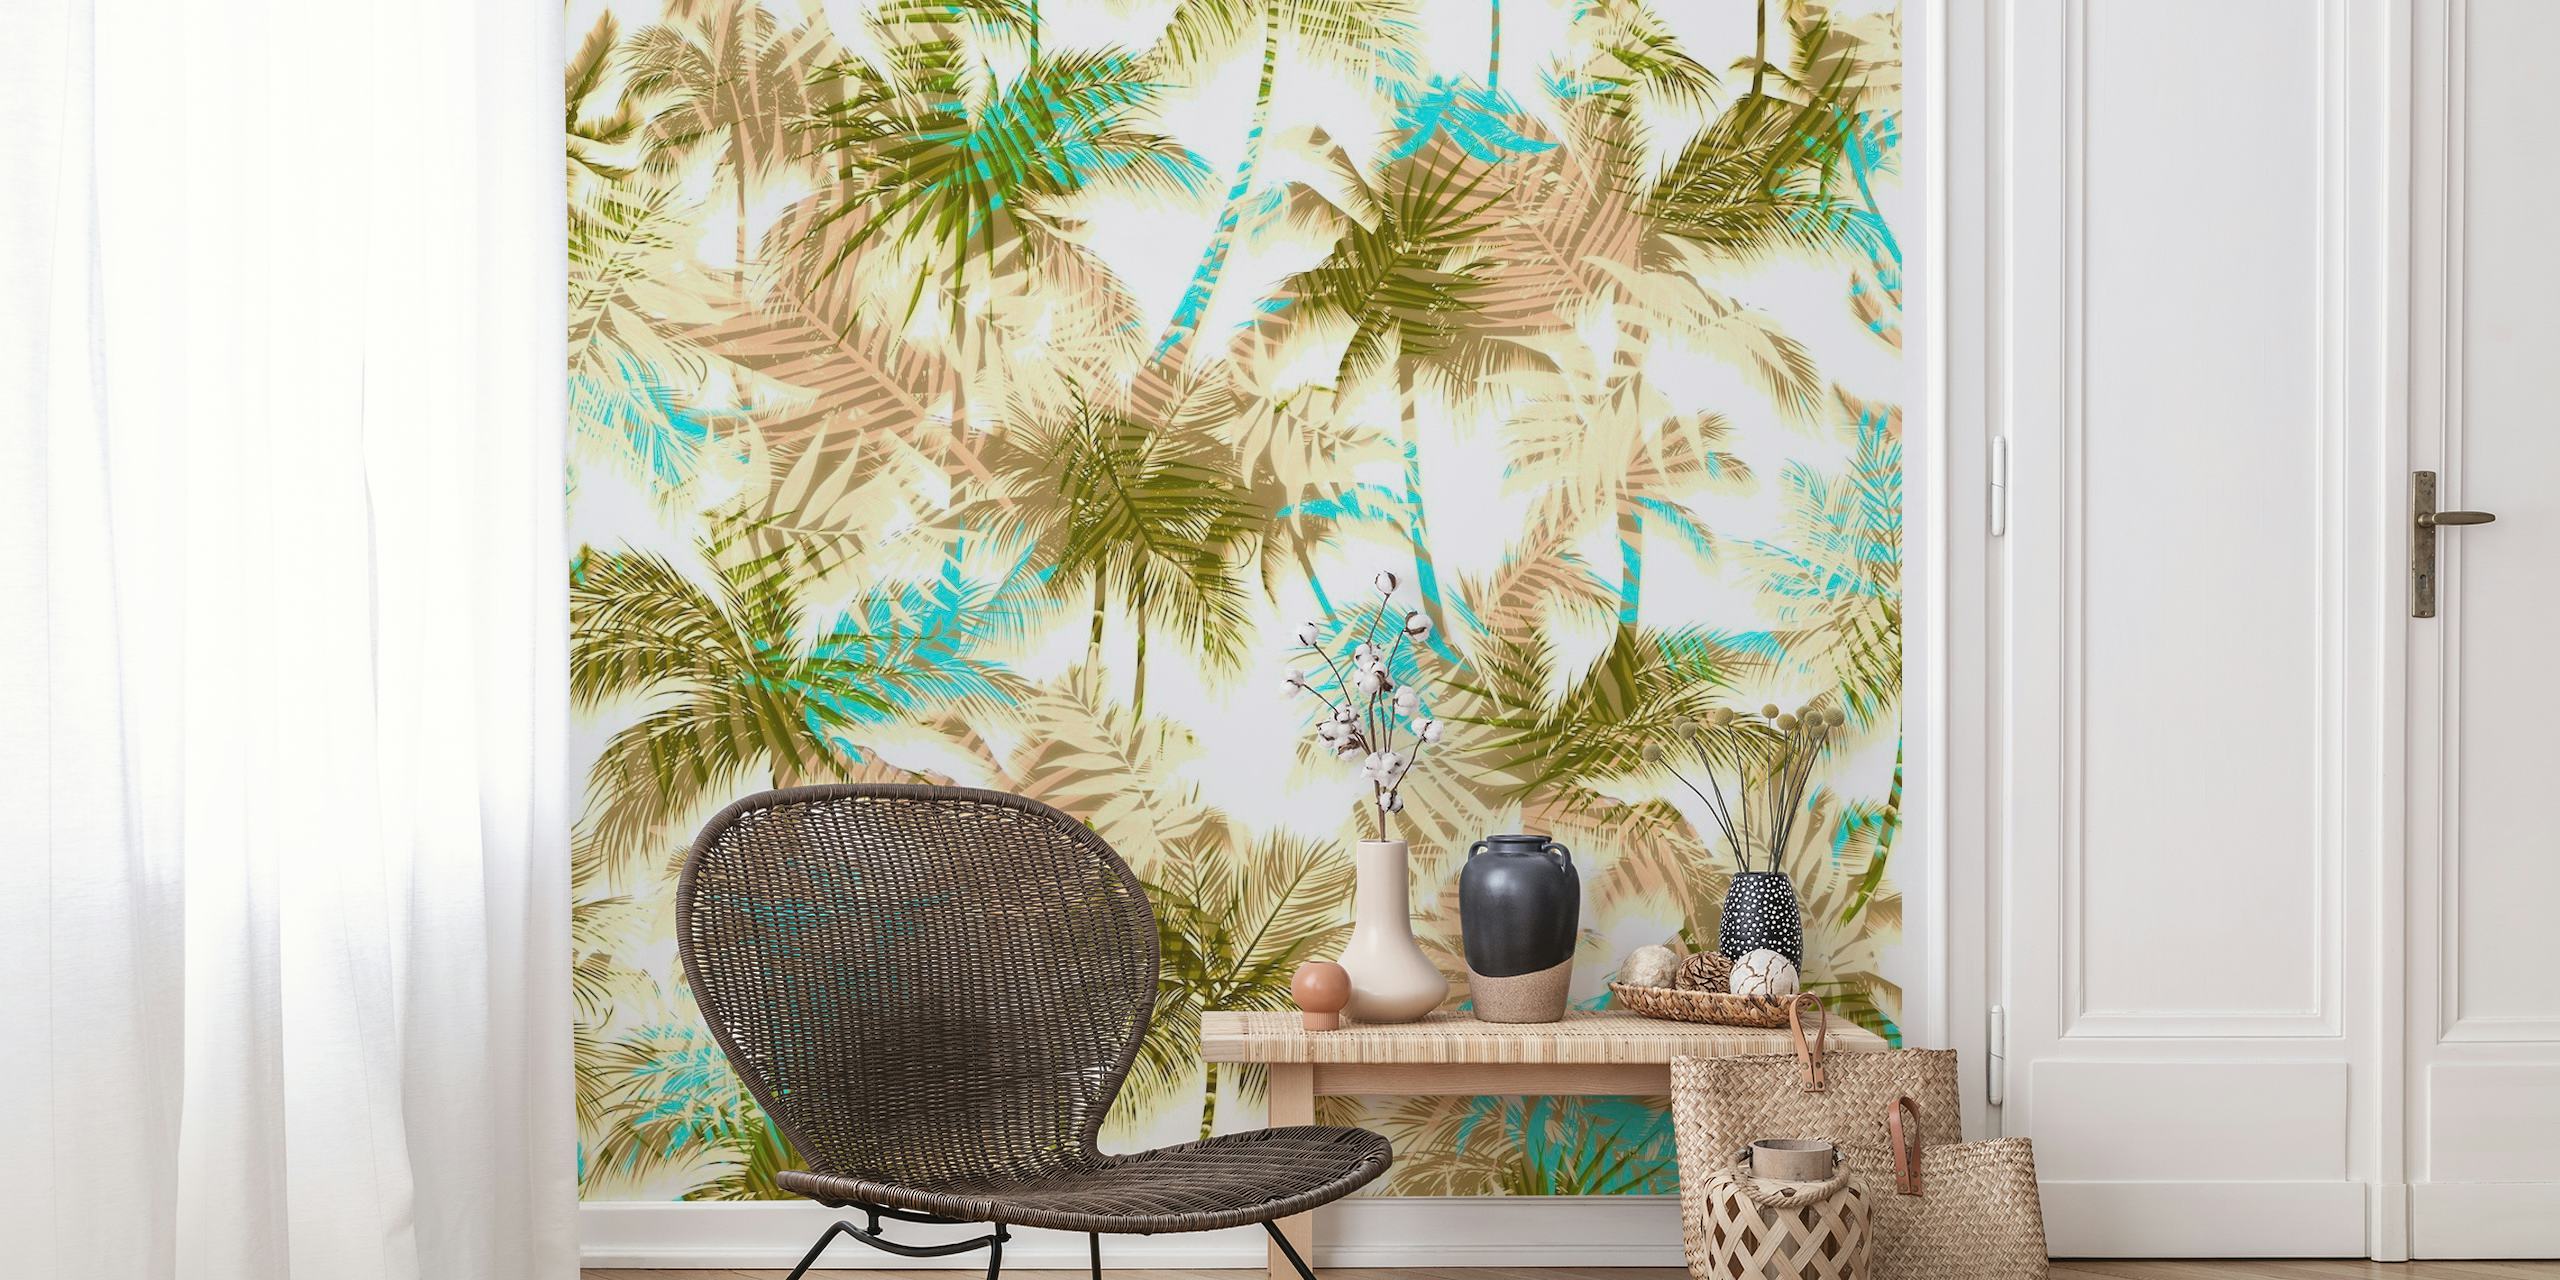 Motivi astratti di foglie mescolati con palme tropicali in toni tenui e tenui per l'arredamento delle pareti